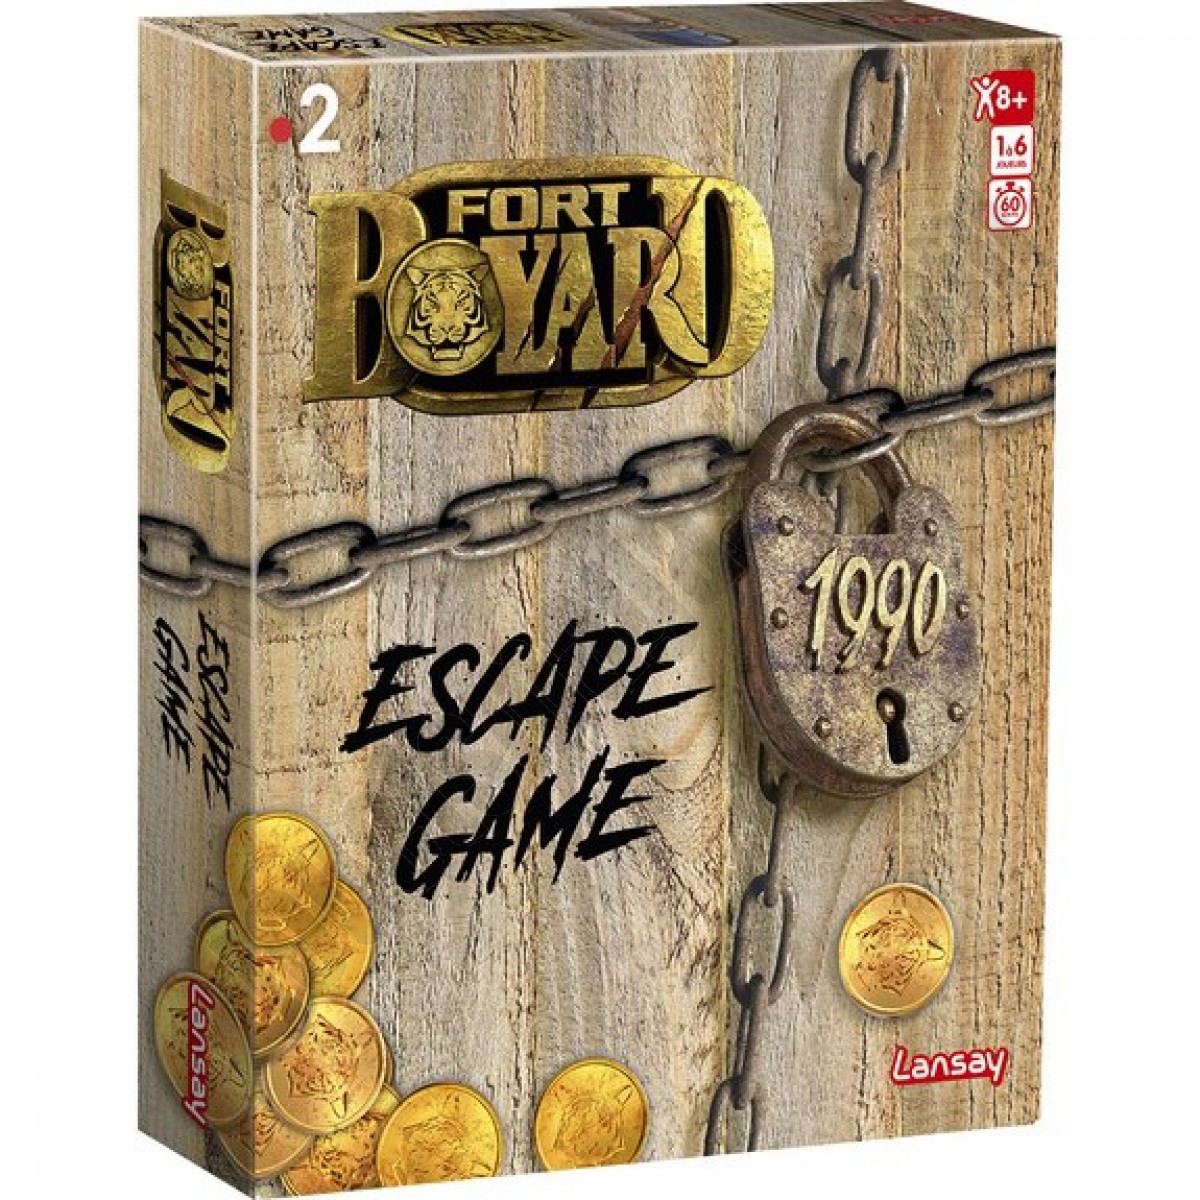 Fort Boyard - Escape Game ◆◆◆ Nouveau - Fort Boyard - Escape Game ◆◆◆ Nouveau